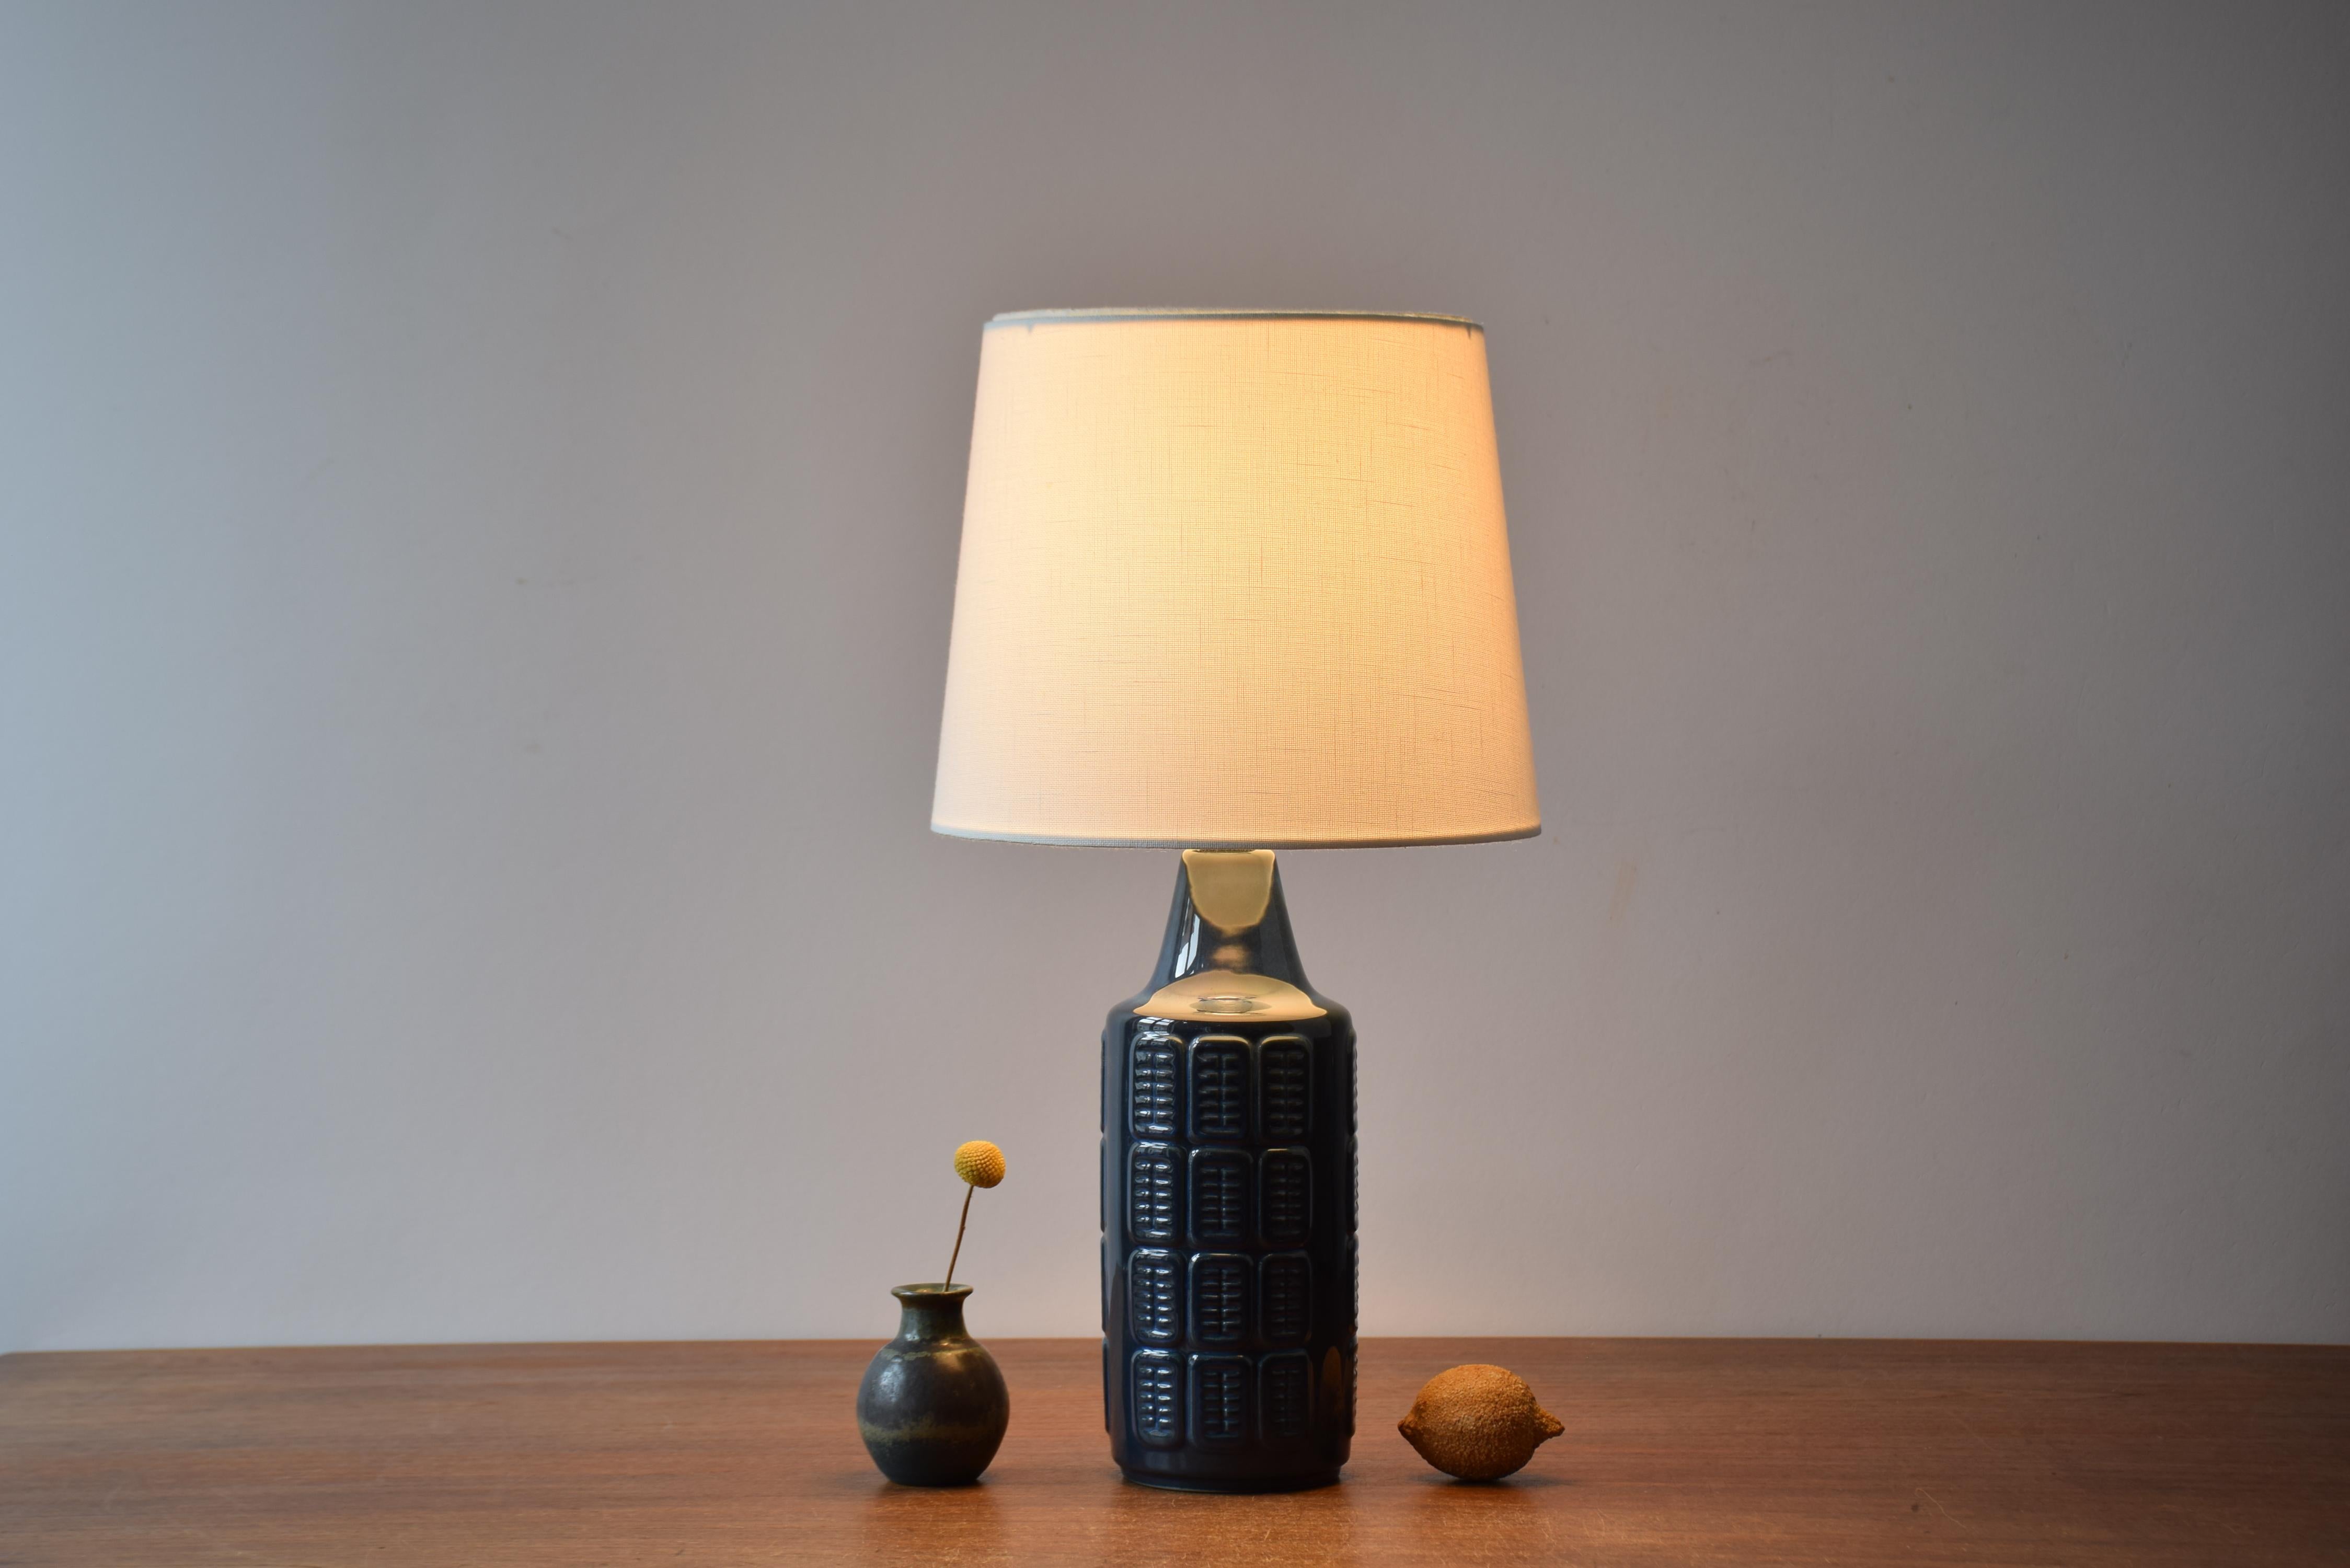 Tischleuchte von Einar Johansen für Søholm Stentøj, Dänemark, ca. 1960er Jahre.
Die Lampe hat eine glänzende blaue Glasur über einem geprägten, sich wiederholenden grafischen Dekor. 

Im Lieferumfang enthalten ist ein neuer, in Dänemark entworfener